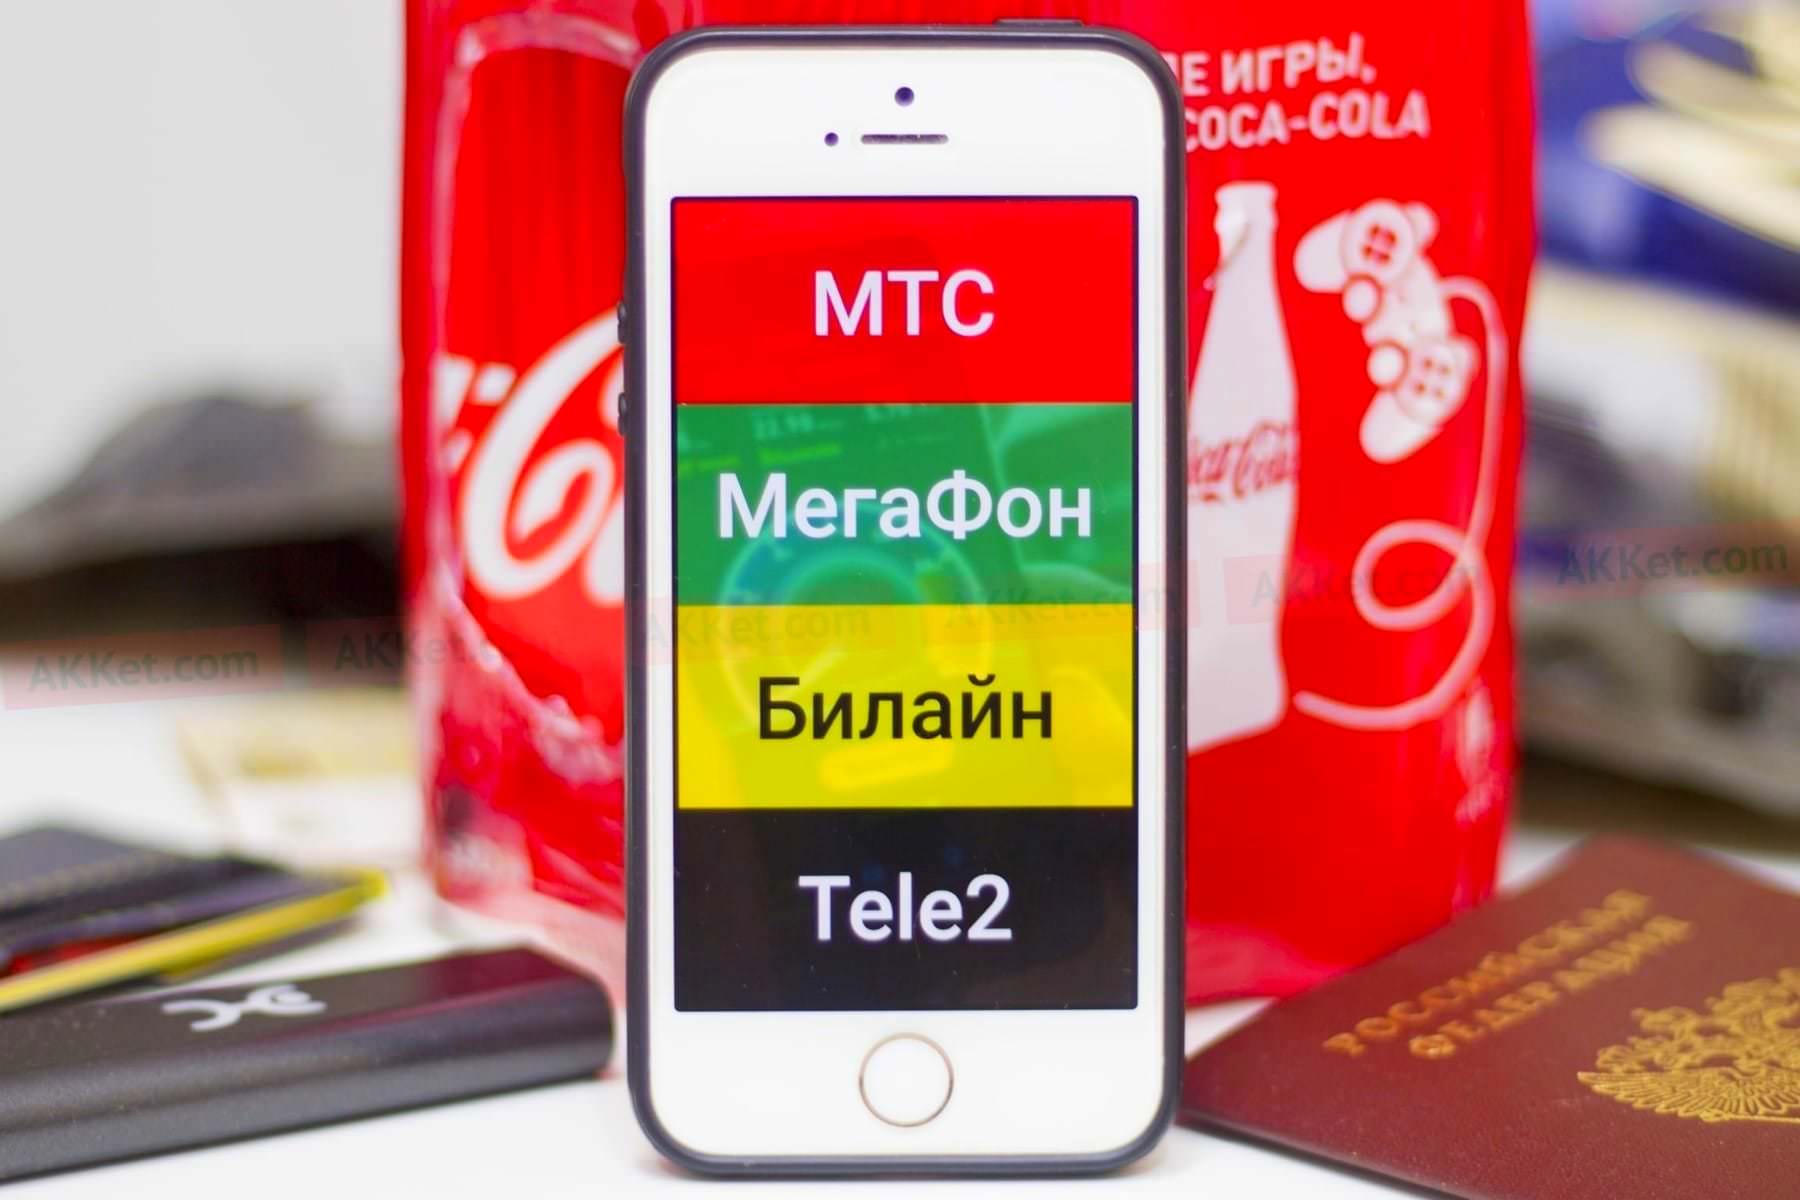 Владимир Путин ликвидировал неожиданно сотовых операторов «МТС», «МегаФон», «Билайн» и Tele2